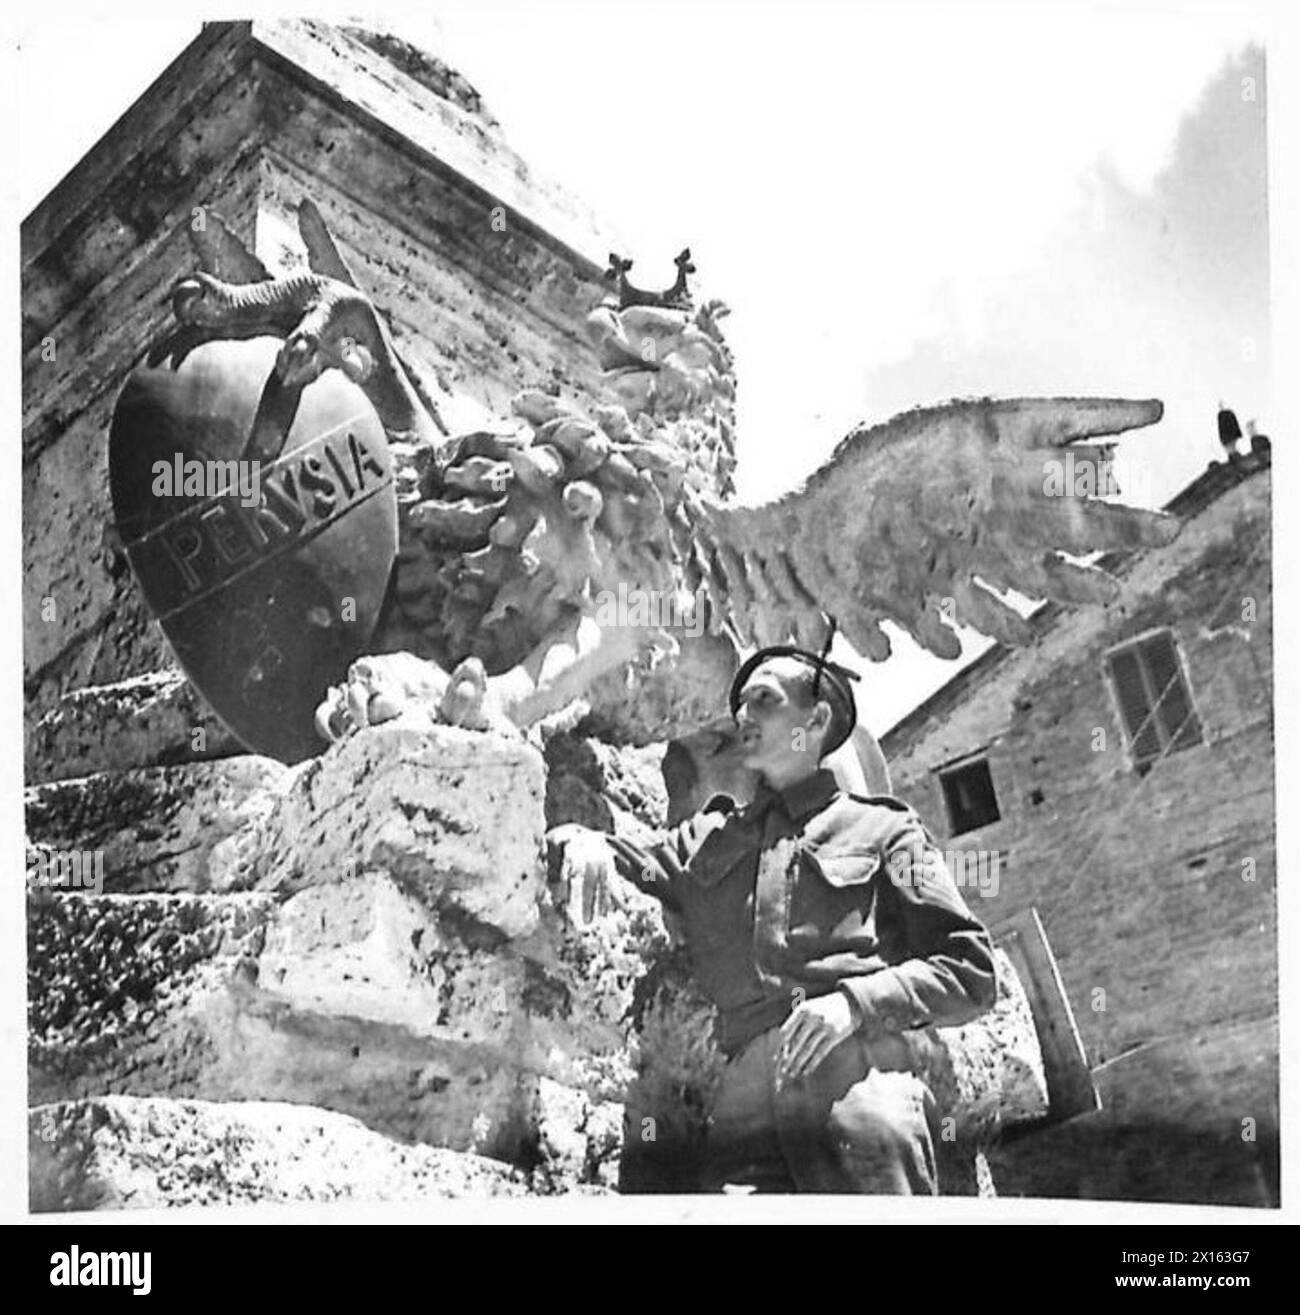 ITALIA: INGRESSO A PERUGIA - Sgt. Charles Heal dell'8 Douglas Road, Sutton Coldfield, Birmingham della 6th Armoured Division, Royal Corps of Signals, guarda il War Memorial dell'esercito britannico di Perugia Foto Stock